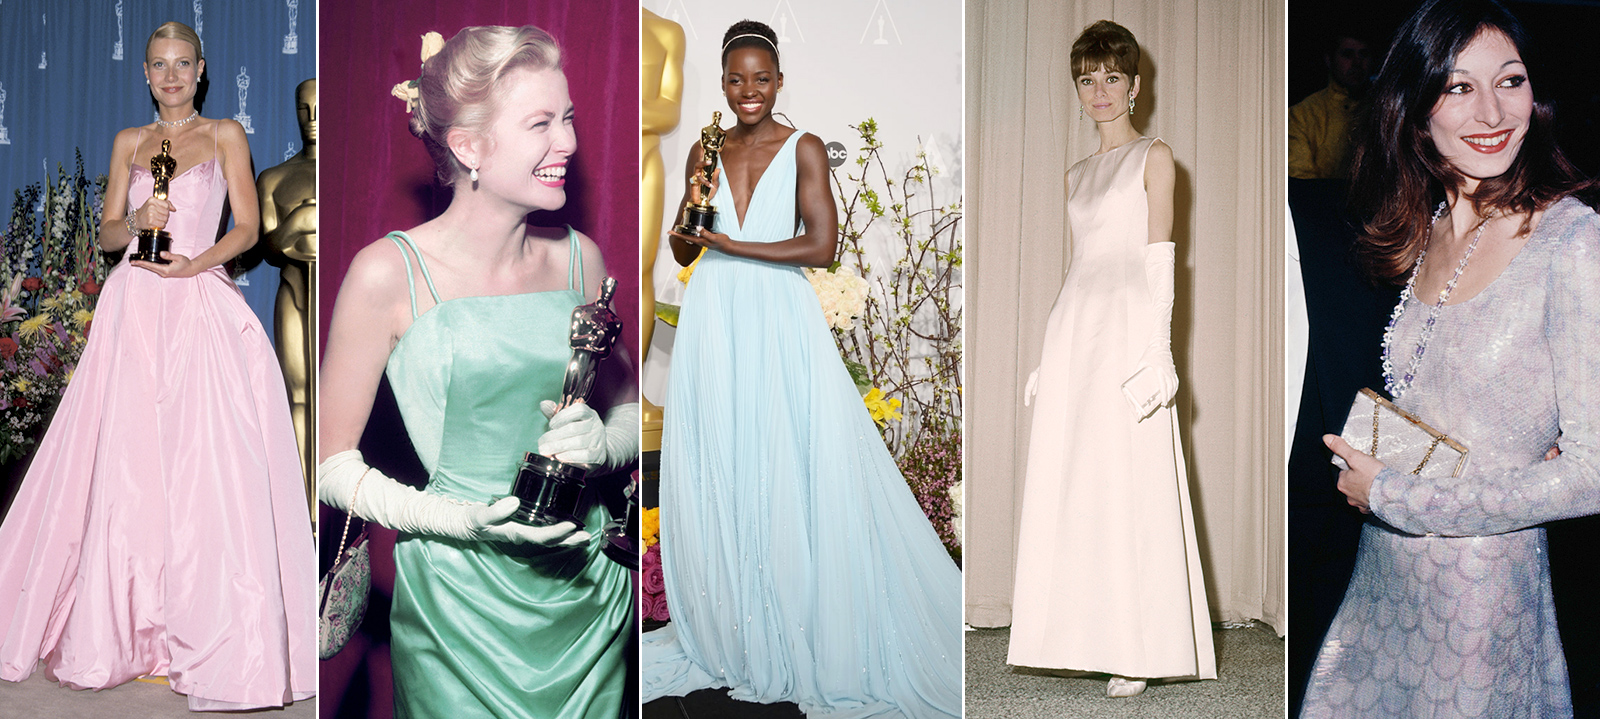 Los vestidos más inolvidables de la historia de los Oscar | S Moda